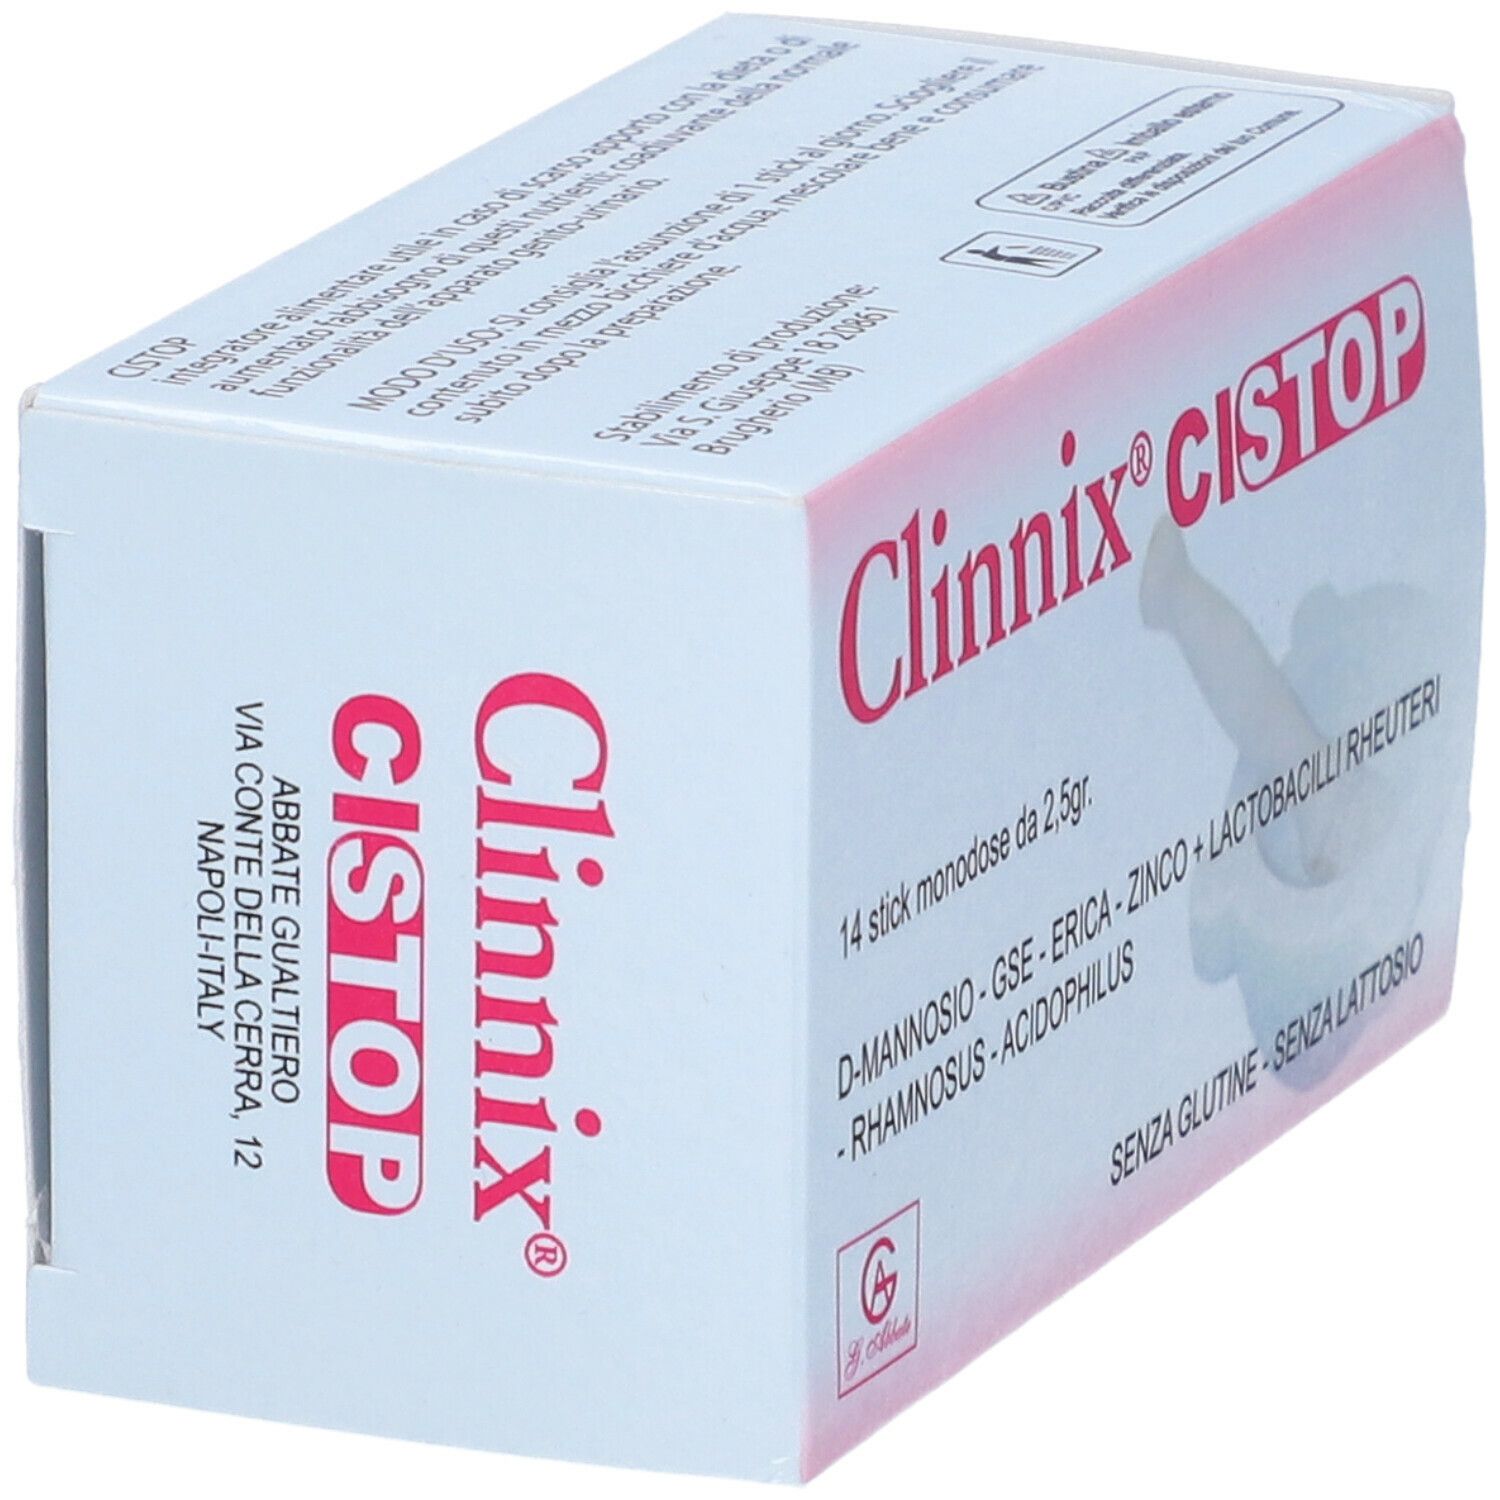 Clinnix Cistop Monodose